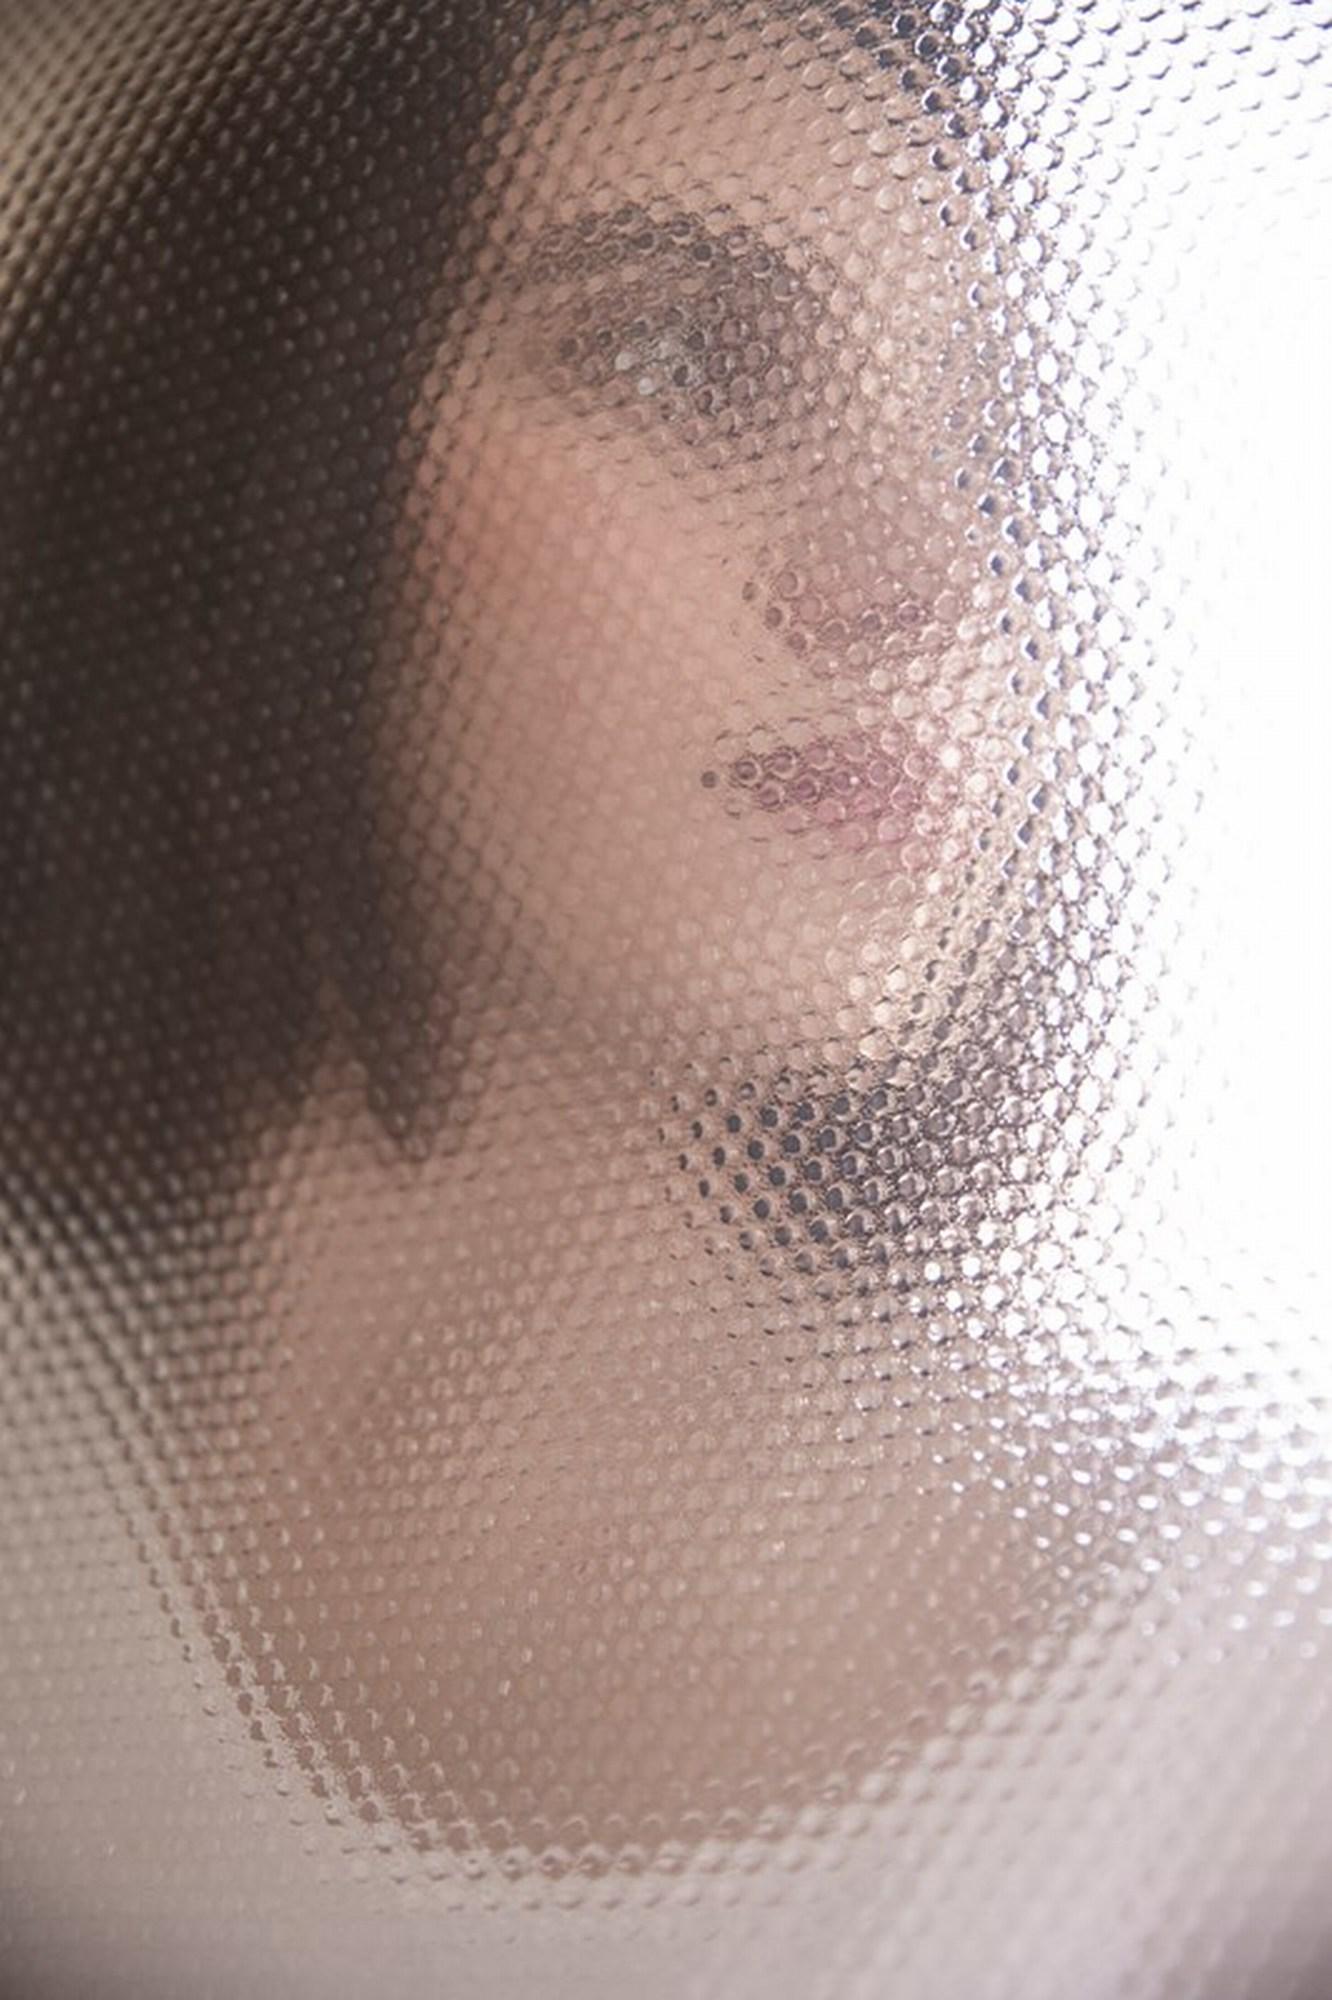 Rachel Lauren Portrait Photograph - Warped